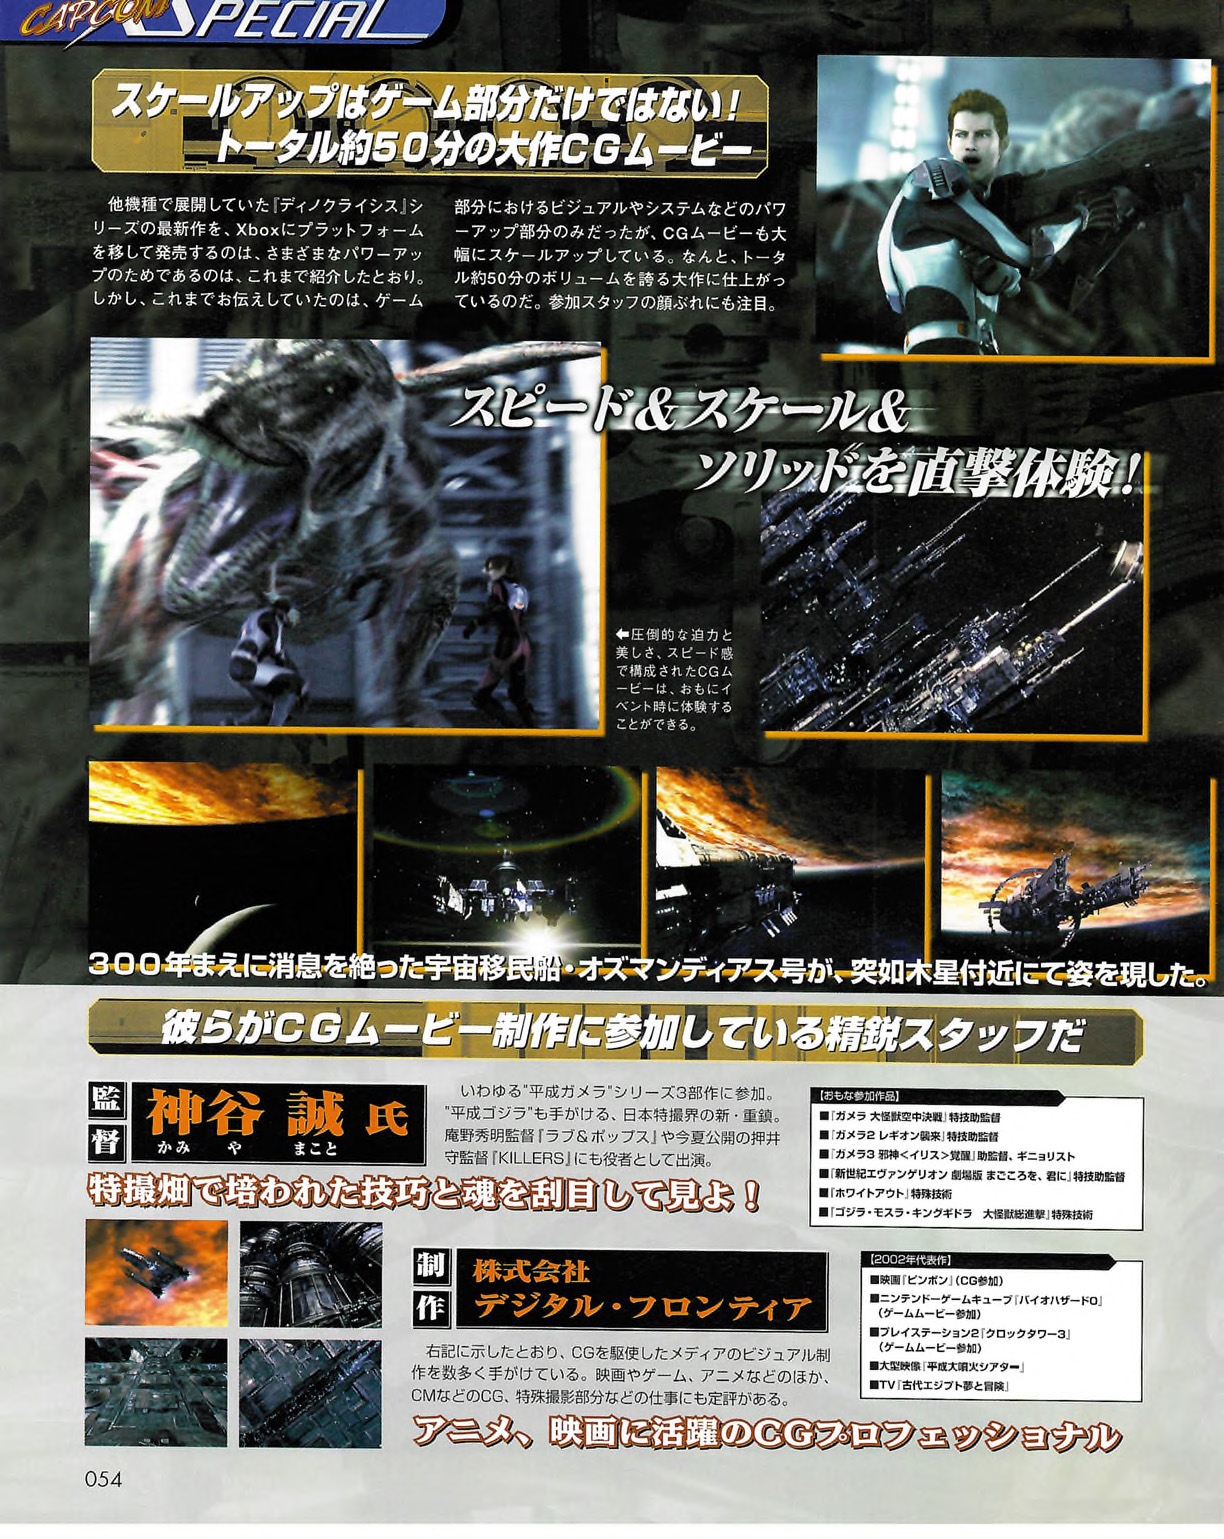 Famitsu_Xbox_2003-04_jp2 53